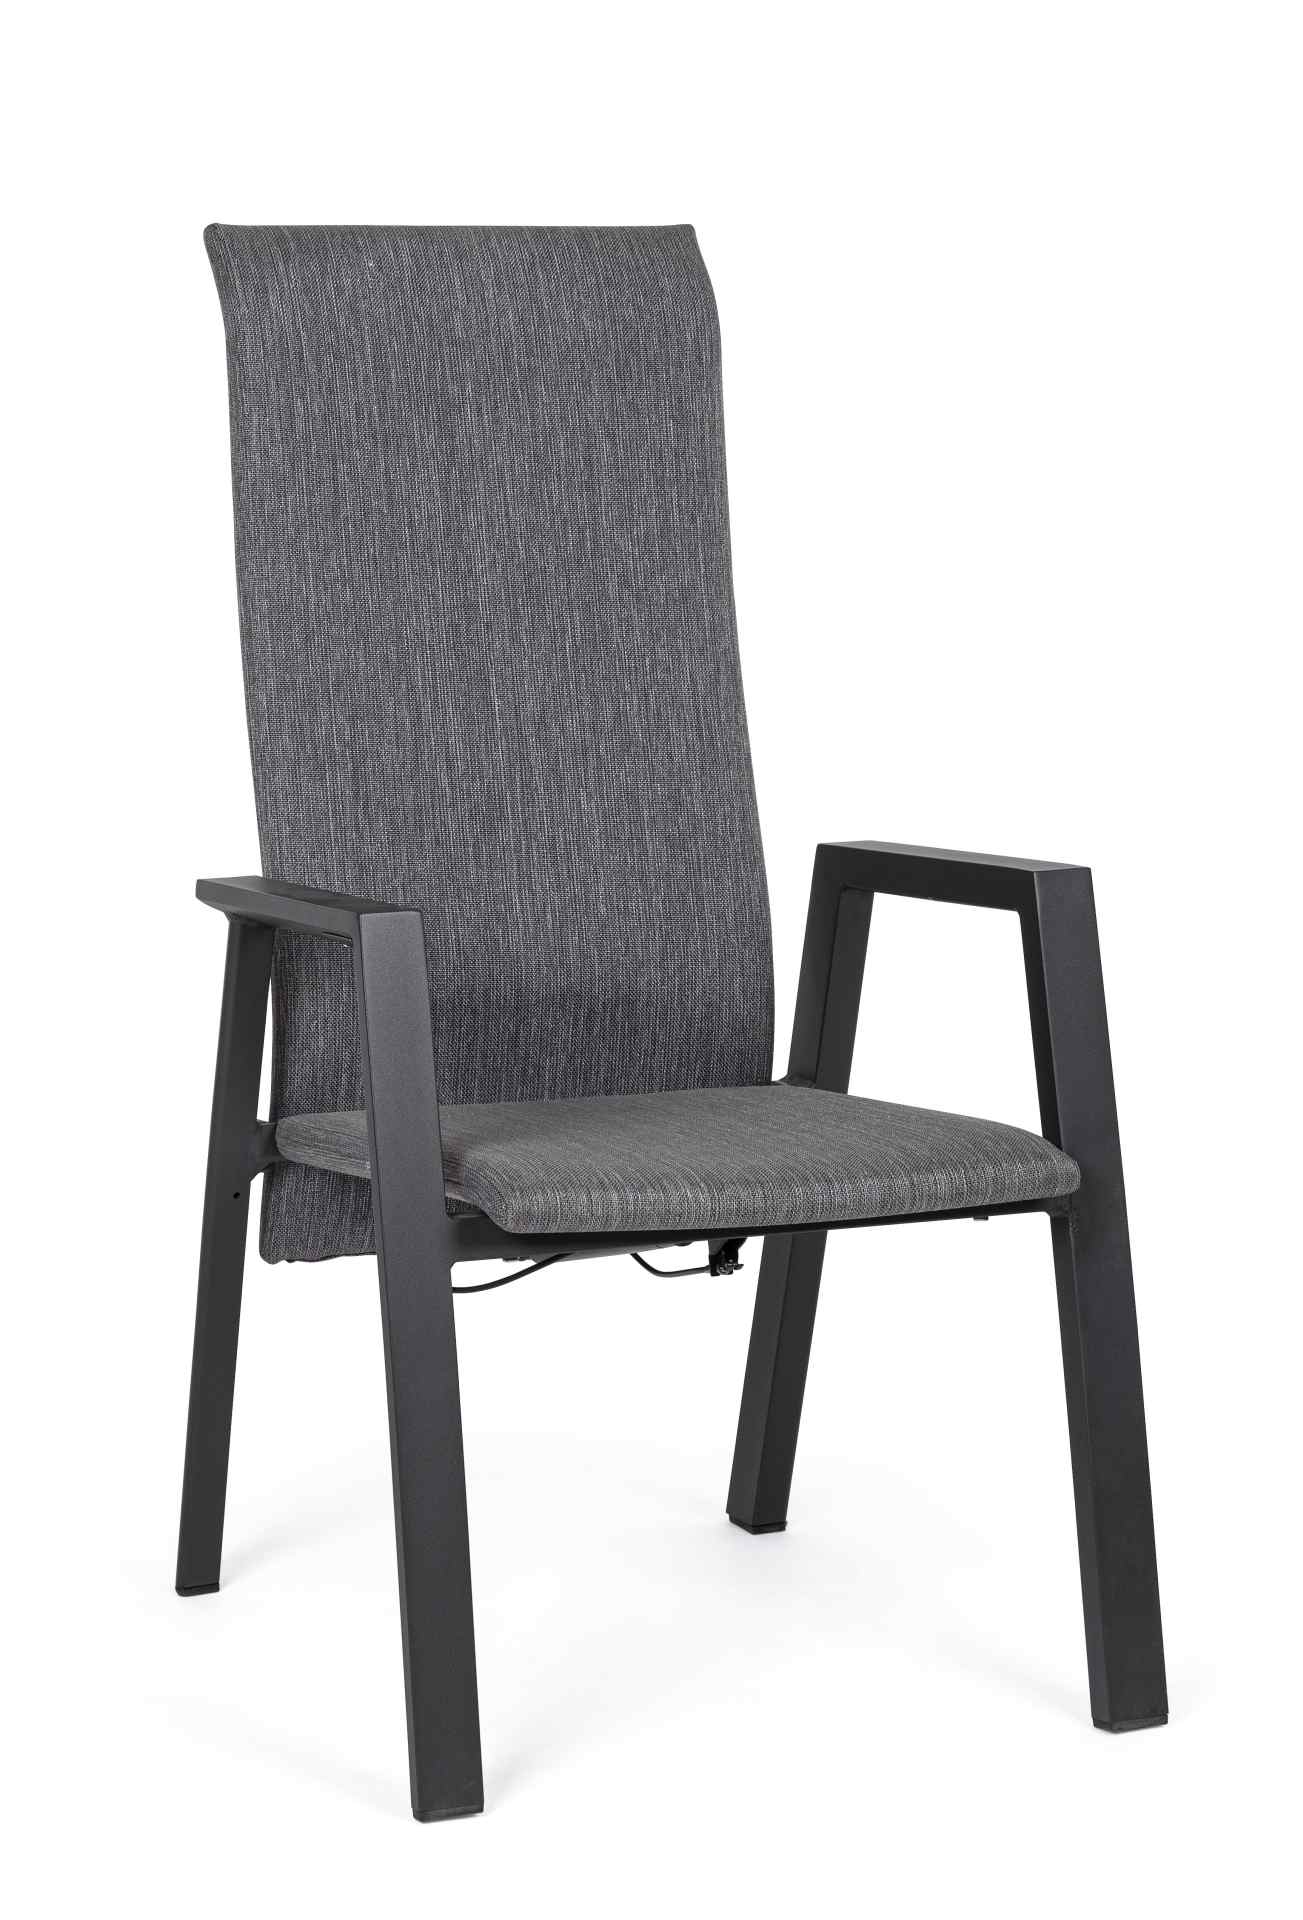 Der Gartenstuhl Ethan überzeugt mit seinem modernen Design. Gefertigt wurde er aus einem Mischstoff, welcher einen grauen Farbton besitzt. Das Gestell ist aus Aluminium und hat auch eine schwarze Farbe. Der Stuhl verfügt über eine Sitzhöhe von 45 cm und i